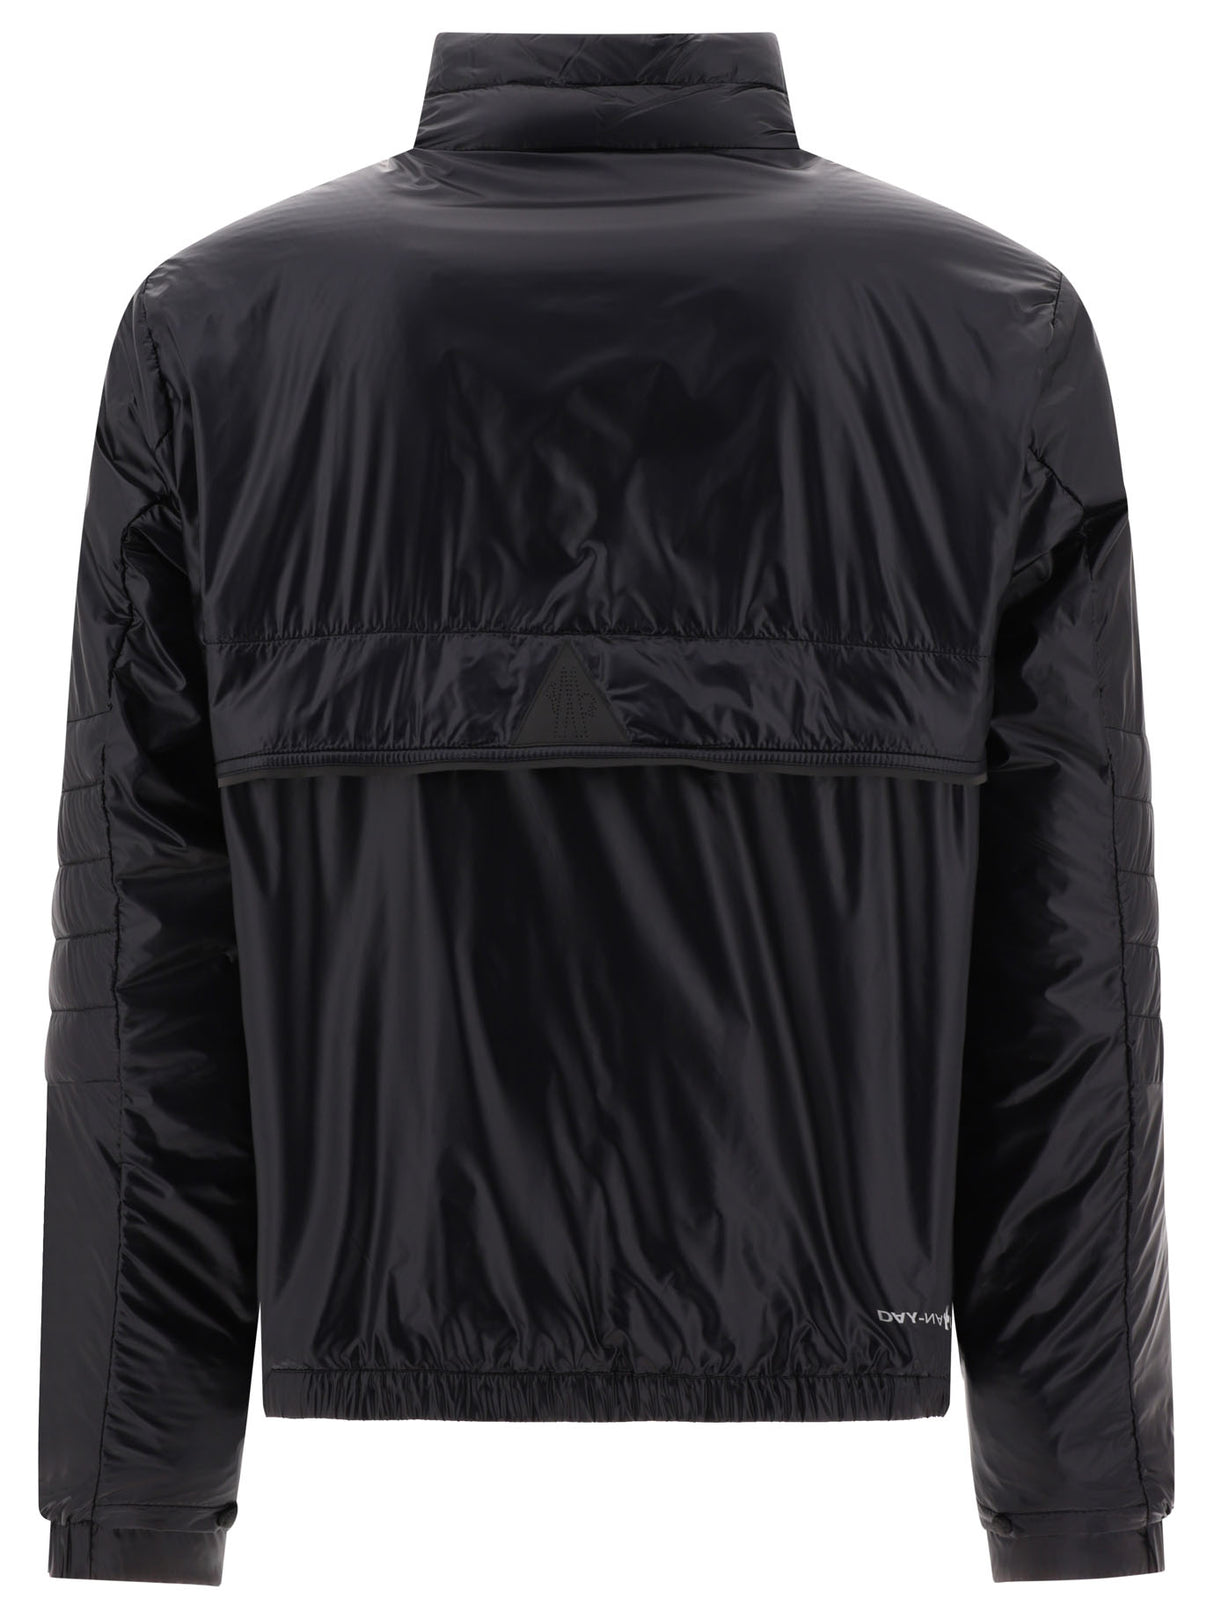 Áo khoác nam phong cách SS24 - Màu đen với kiểu dáng phổ thông, có khóa kéo và nhiều túi đựng